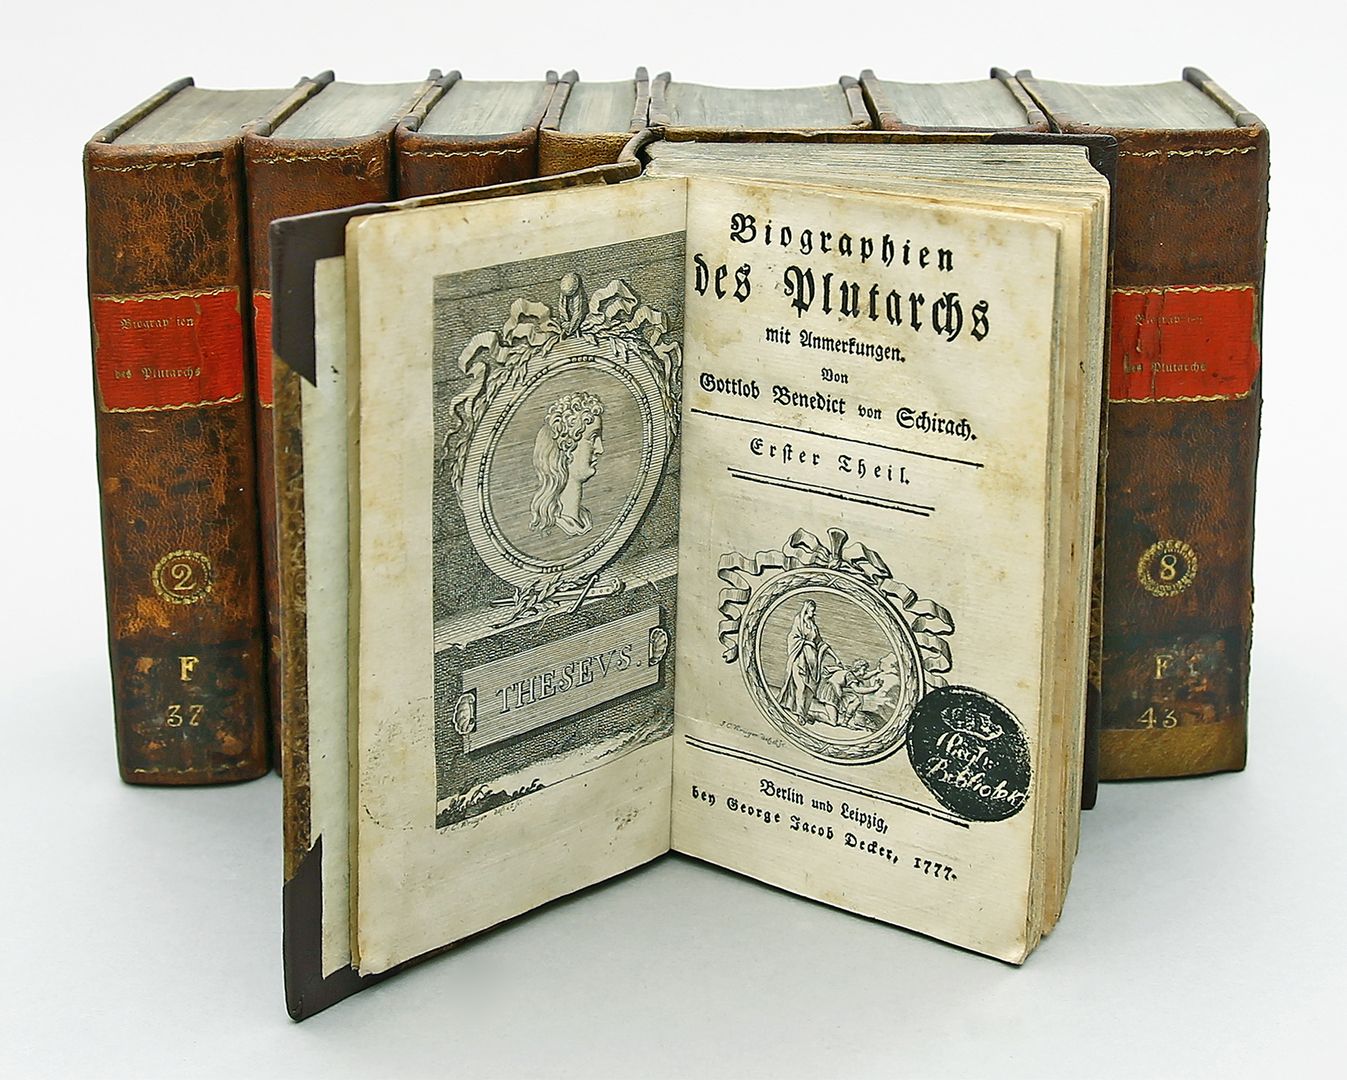 "Biographien des Plutarchs" in acht Bänden.